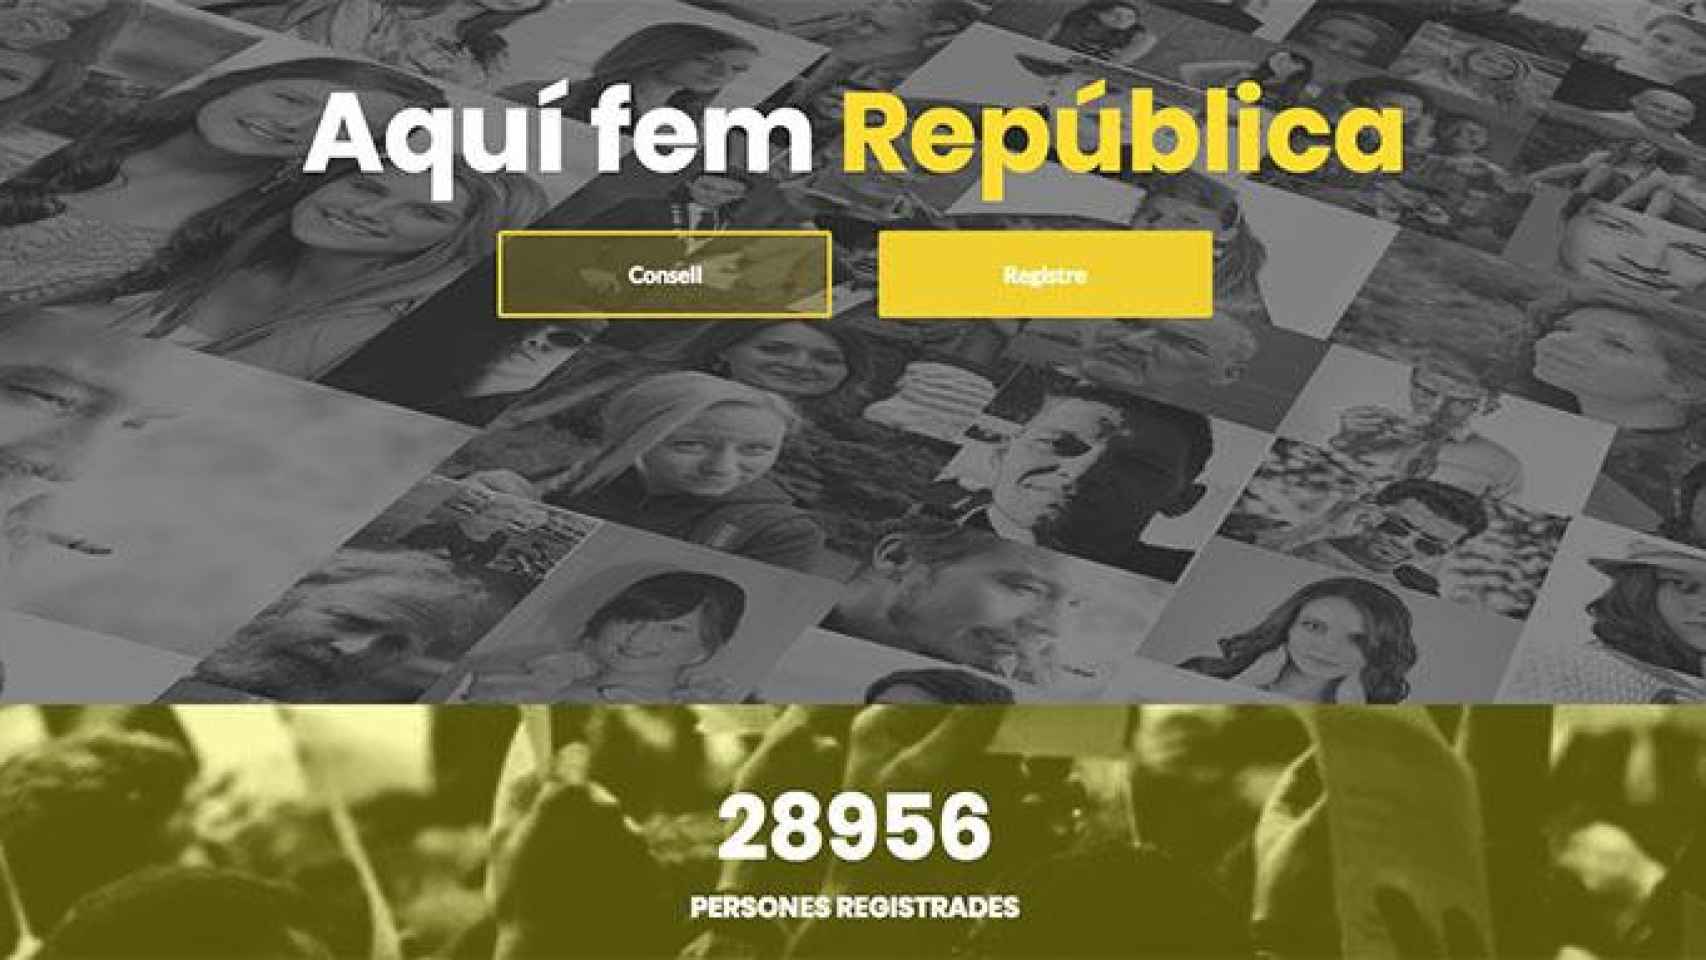 La página web que recoge fondos para el Consejo para la República, impulsado por Carles Puigdemont, podría vulnerar las normas de protección de datos / CG